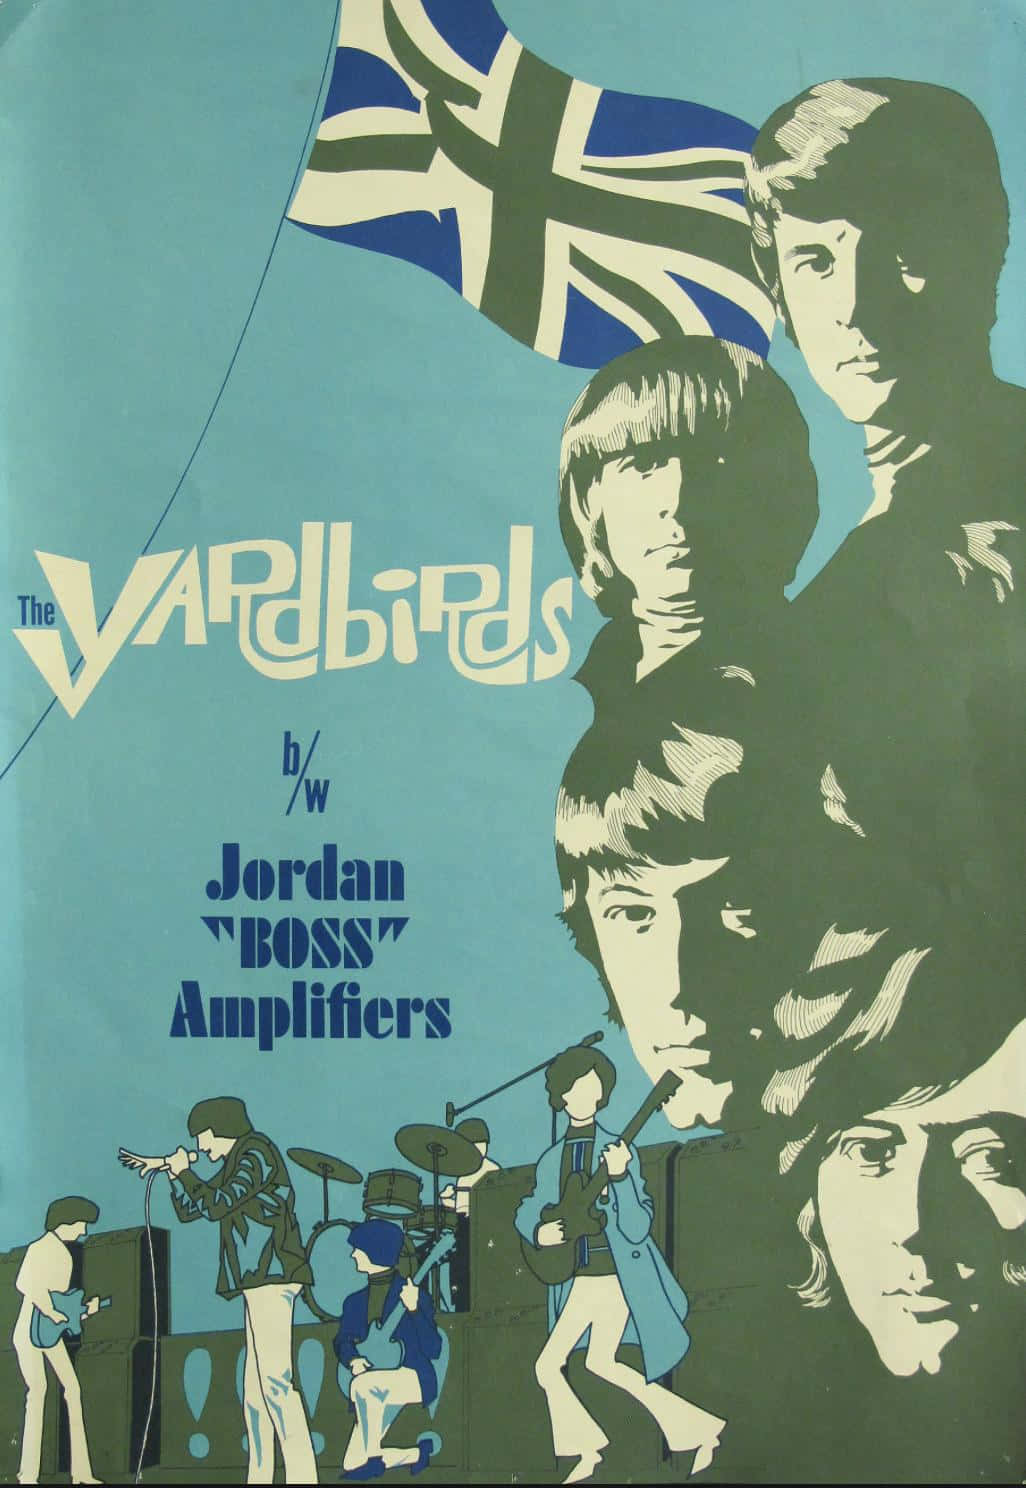 Elposter De Los Amplificadores Jordan Boss De The Yardbirds. Fondo de pantalla